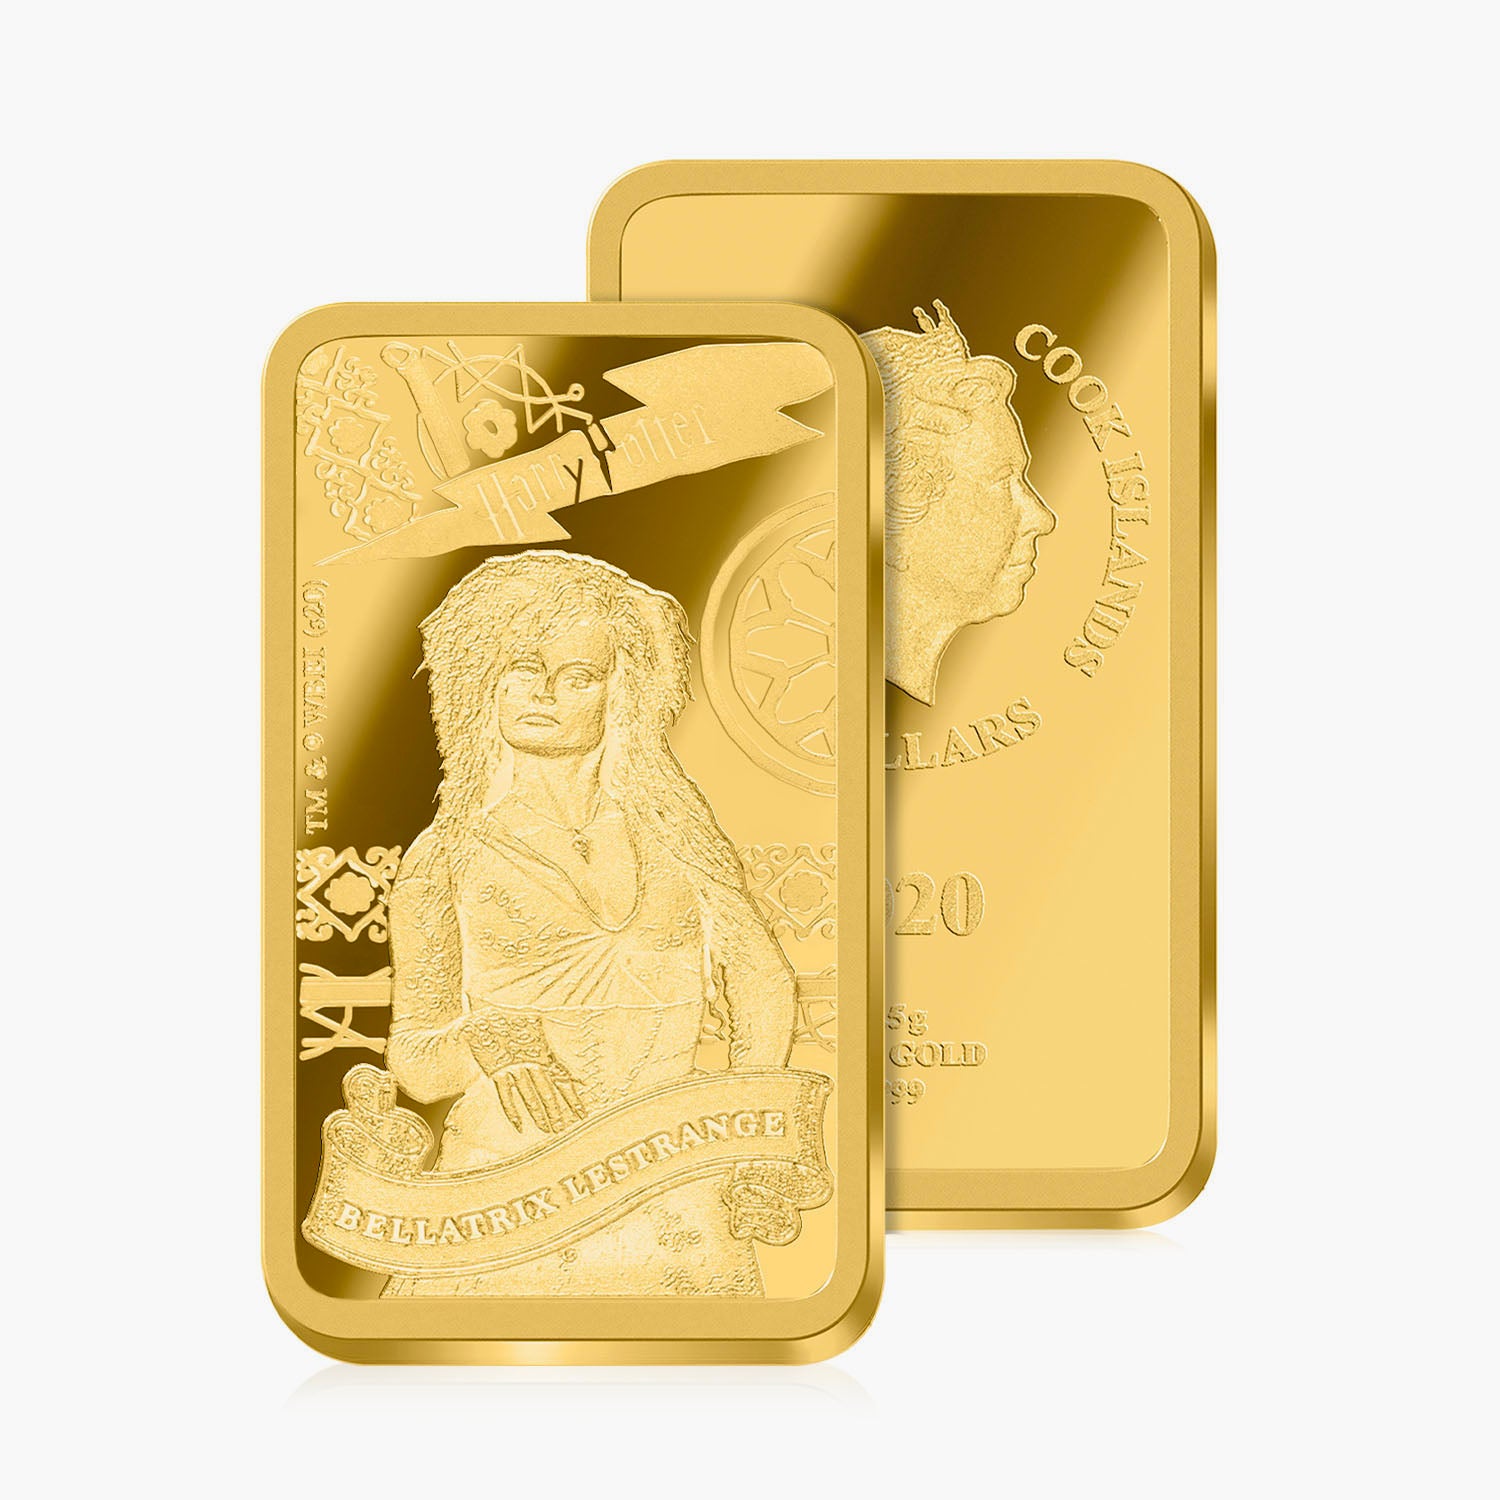 Harry Potter Lestrange Solid Gold Coin